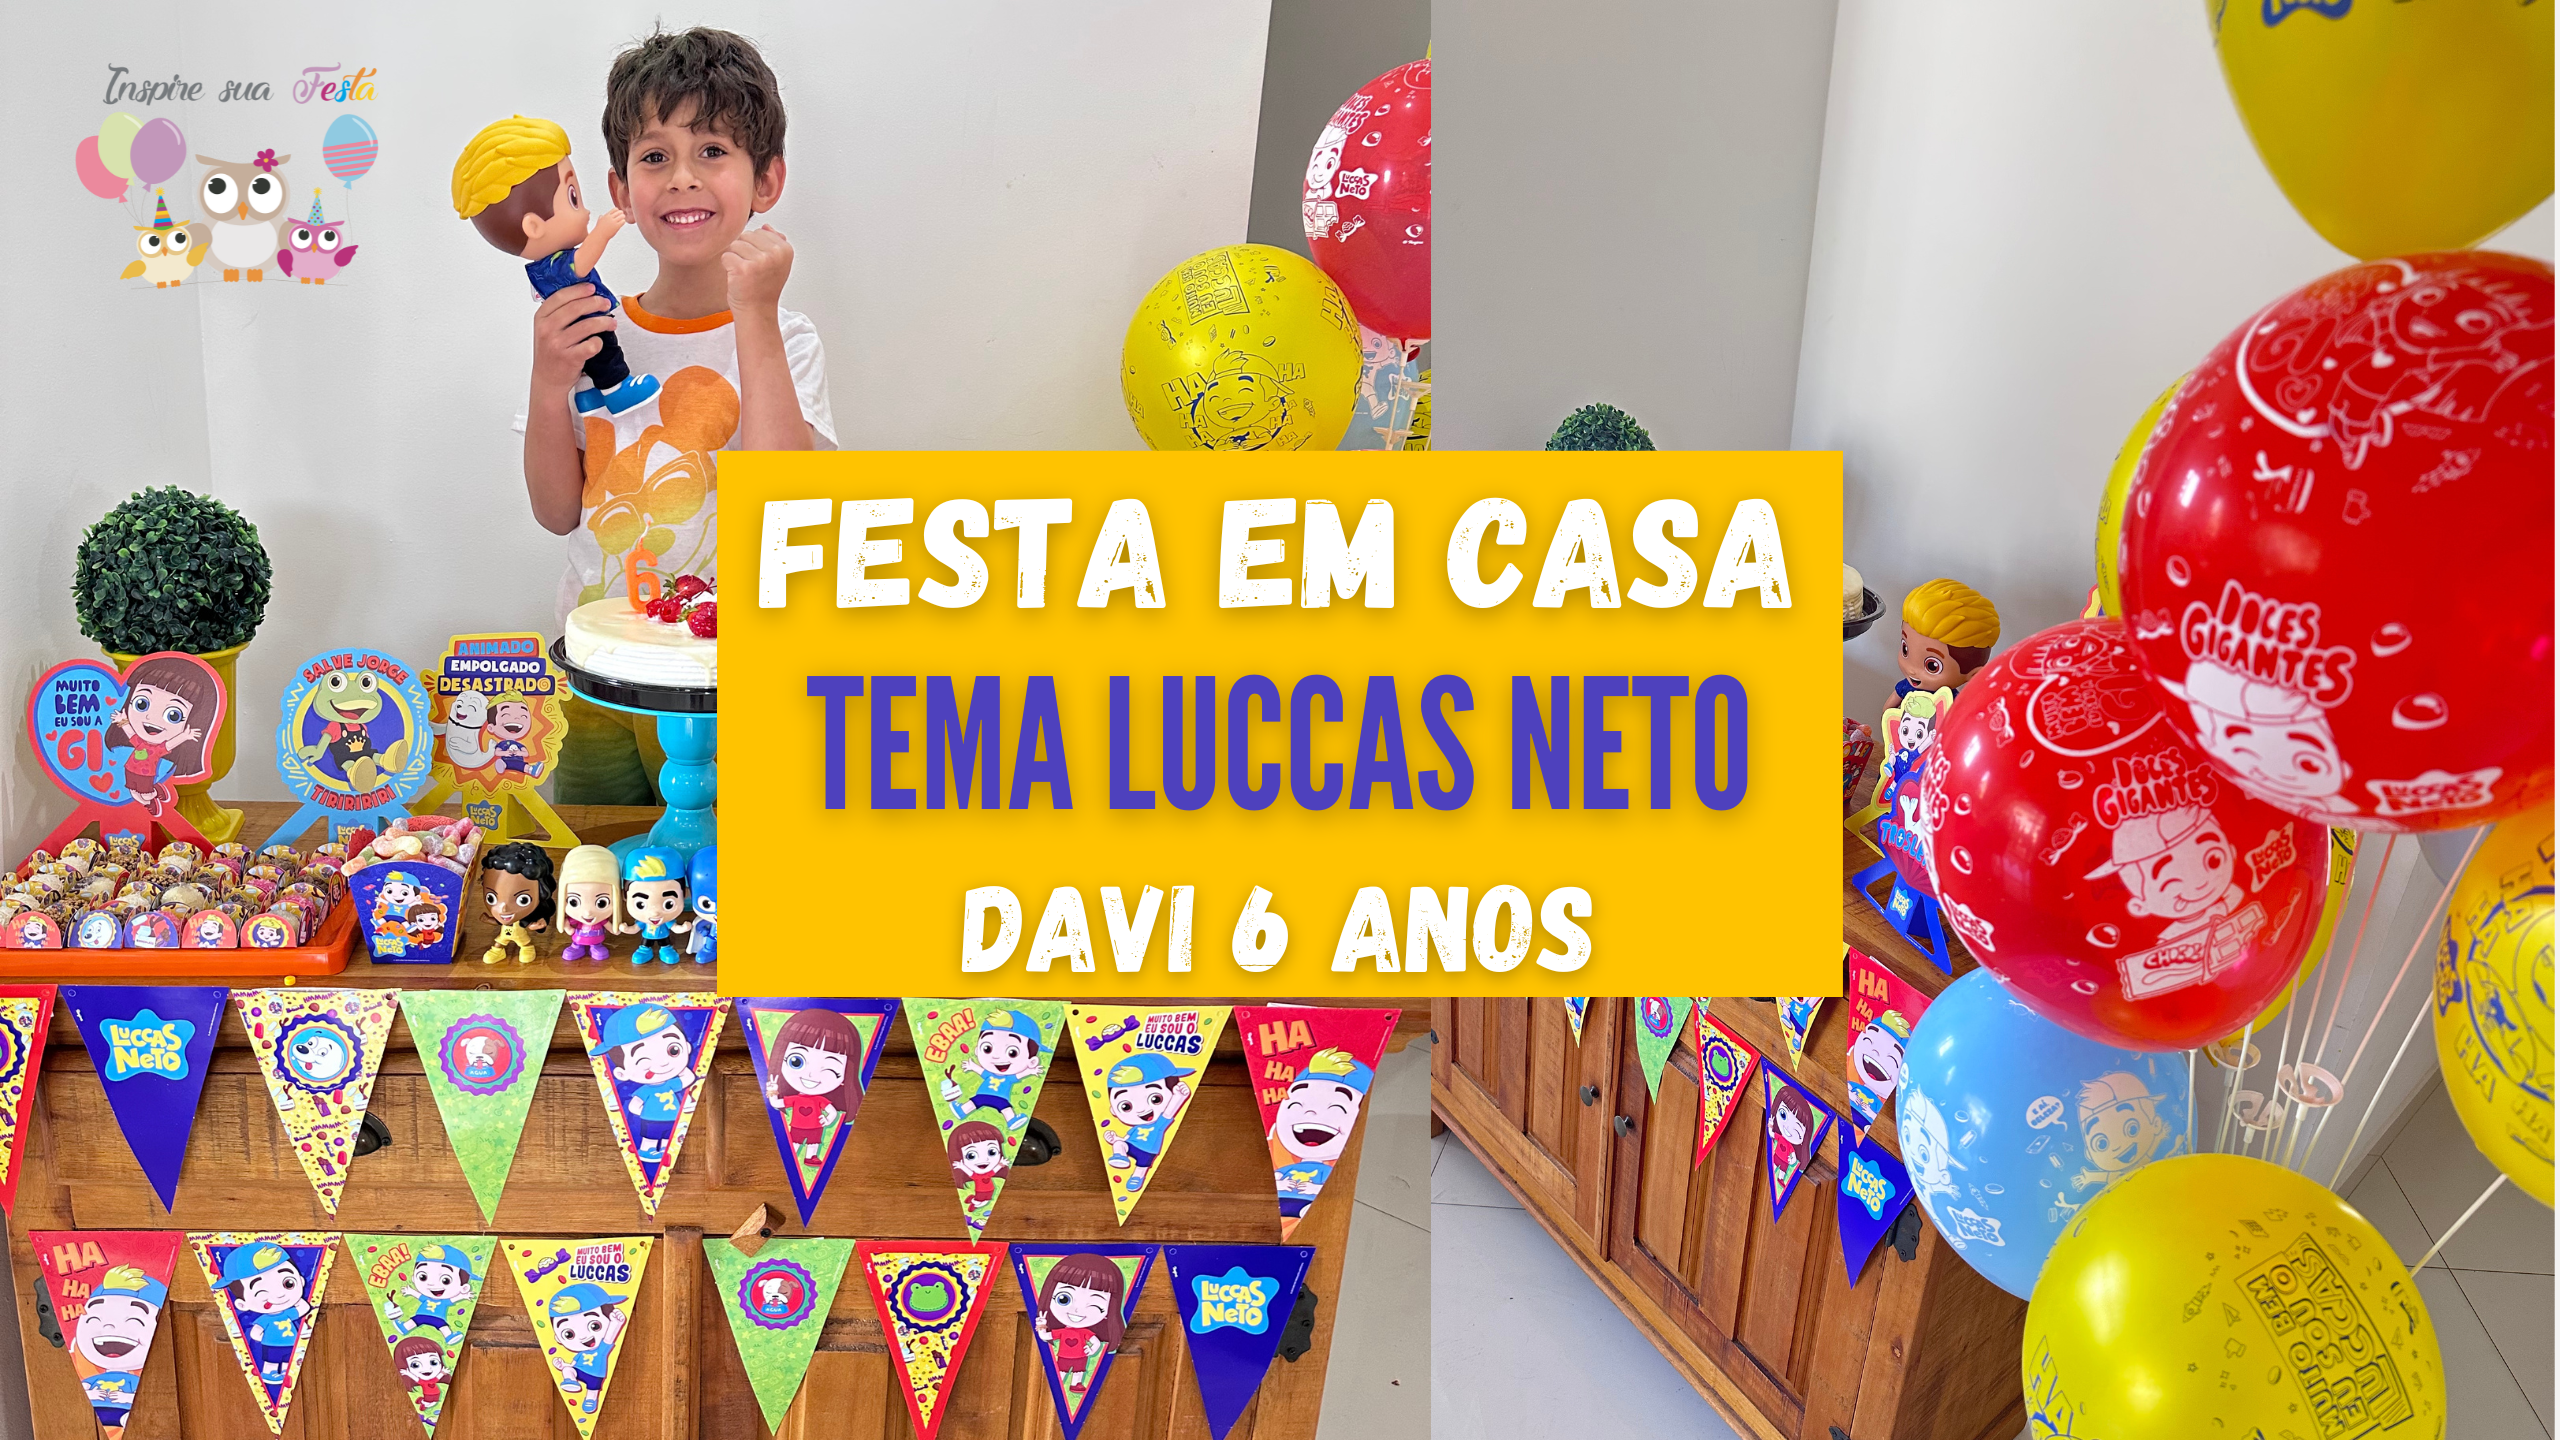 Decoração de Festa Luccas Neto – Festa em Casa – Davi 6 anos